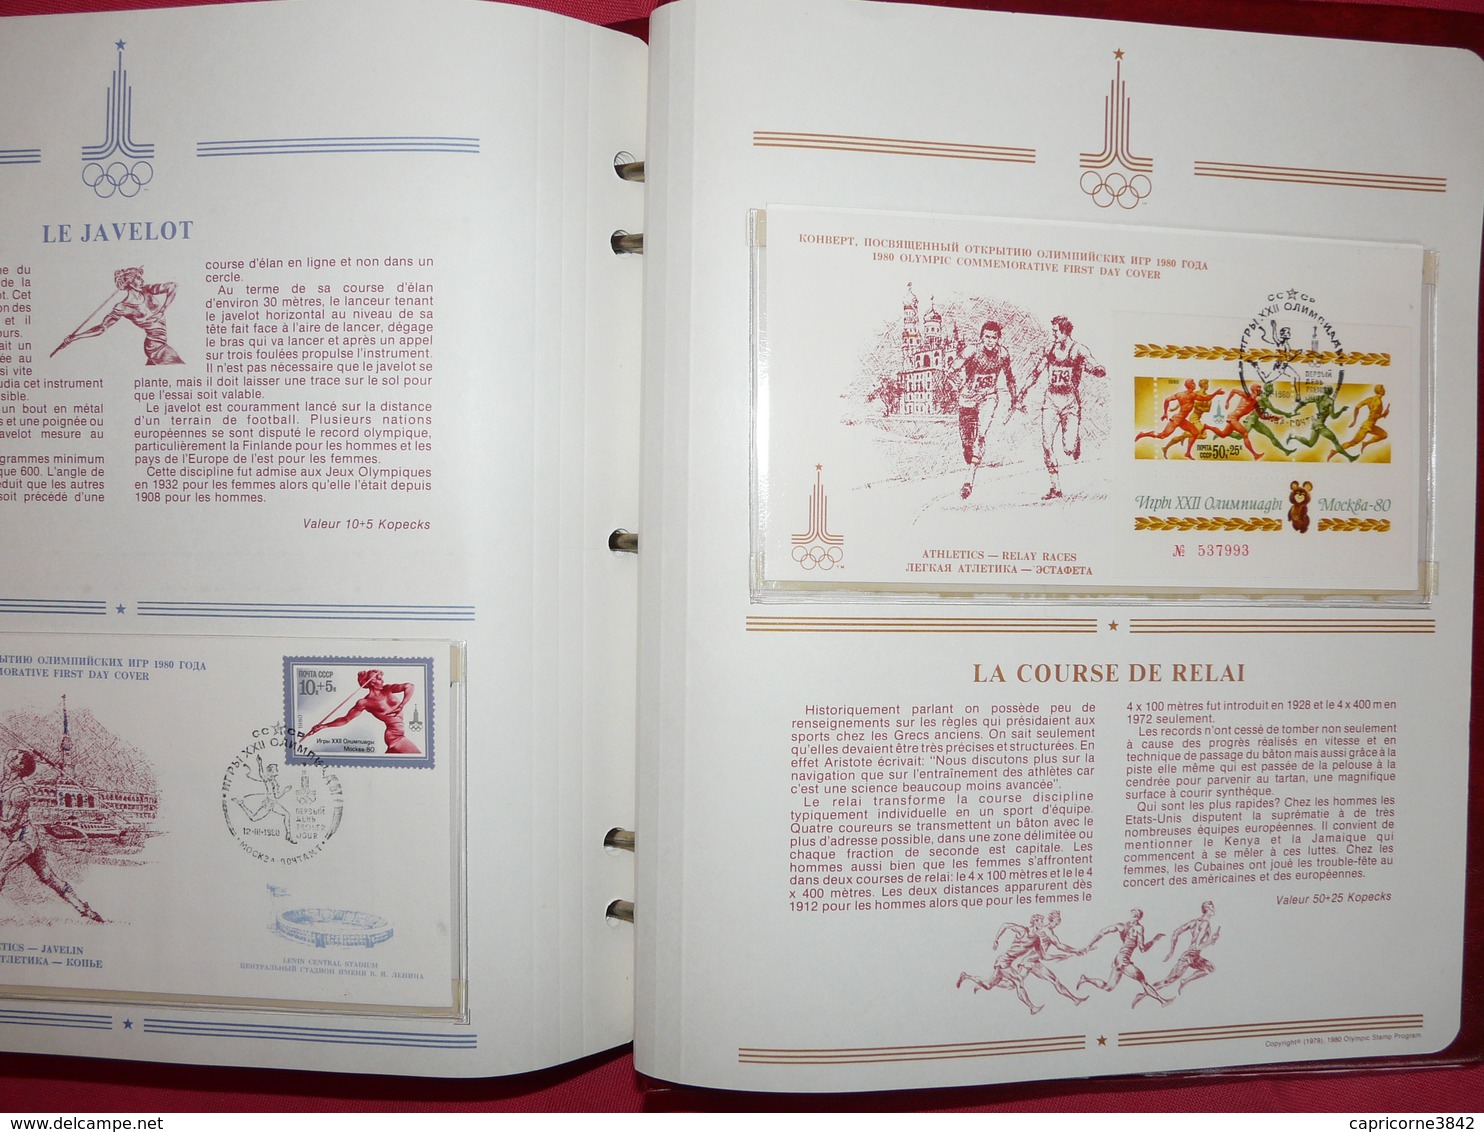 Album des "Jeux Olympiques de MOSCOU 1980" complet.